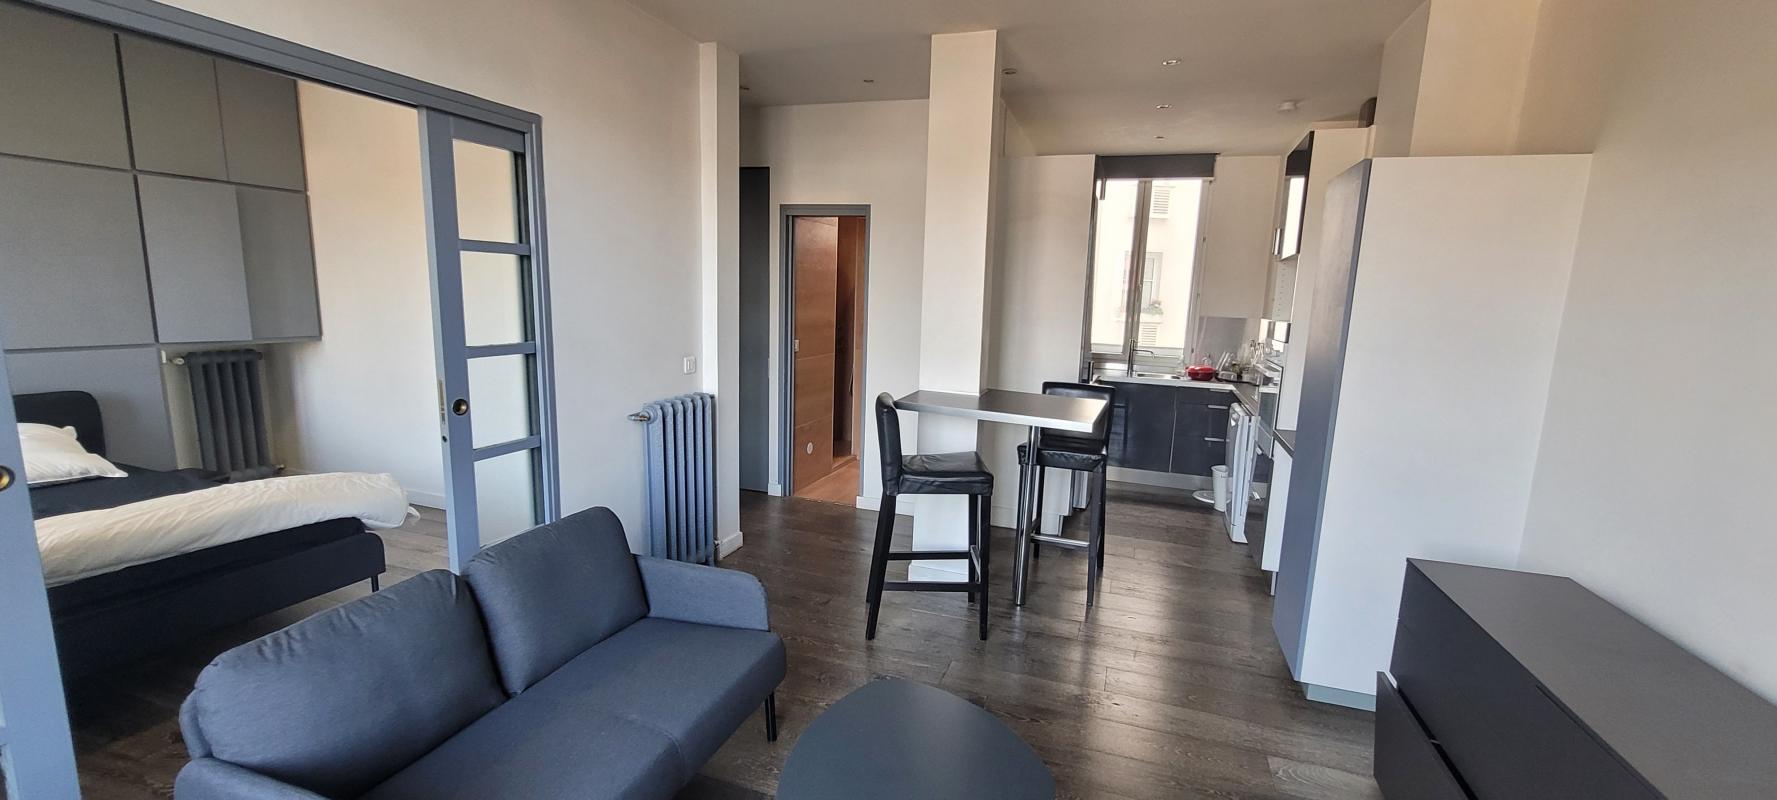 Appartement 2 pièces - Meublé  - 40m² - ISSY LES MOULINEAUX